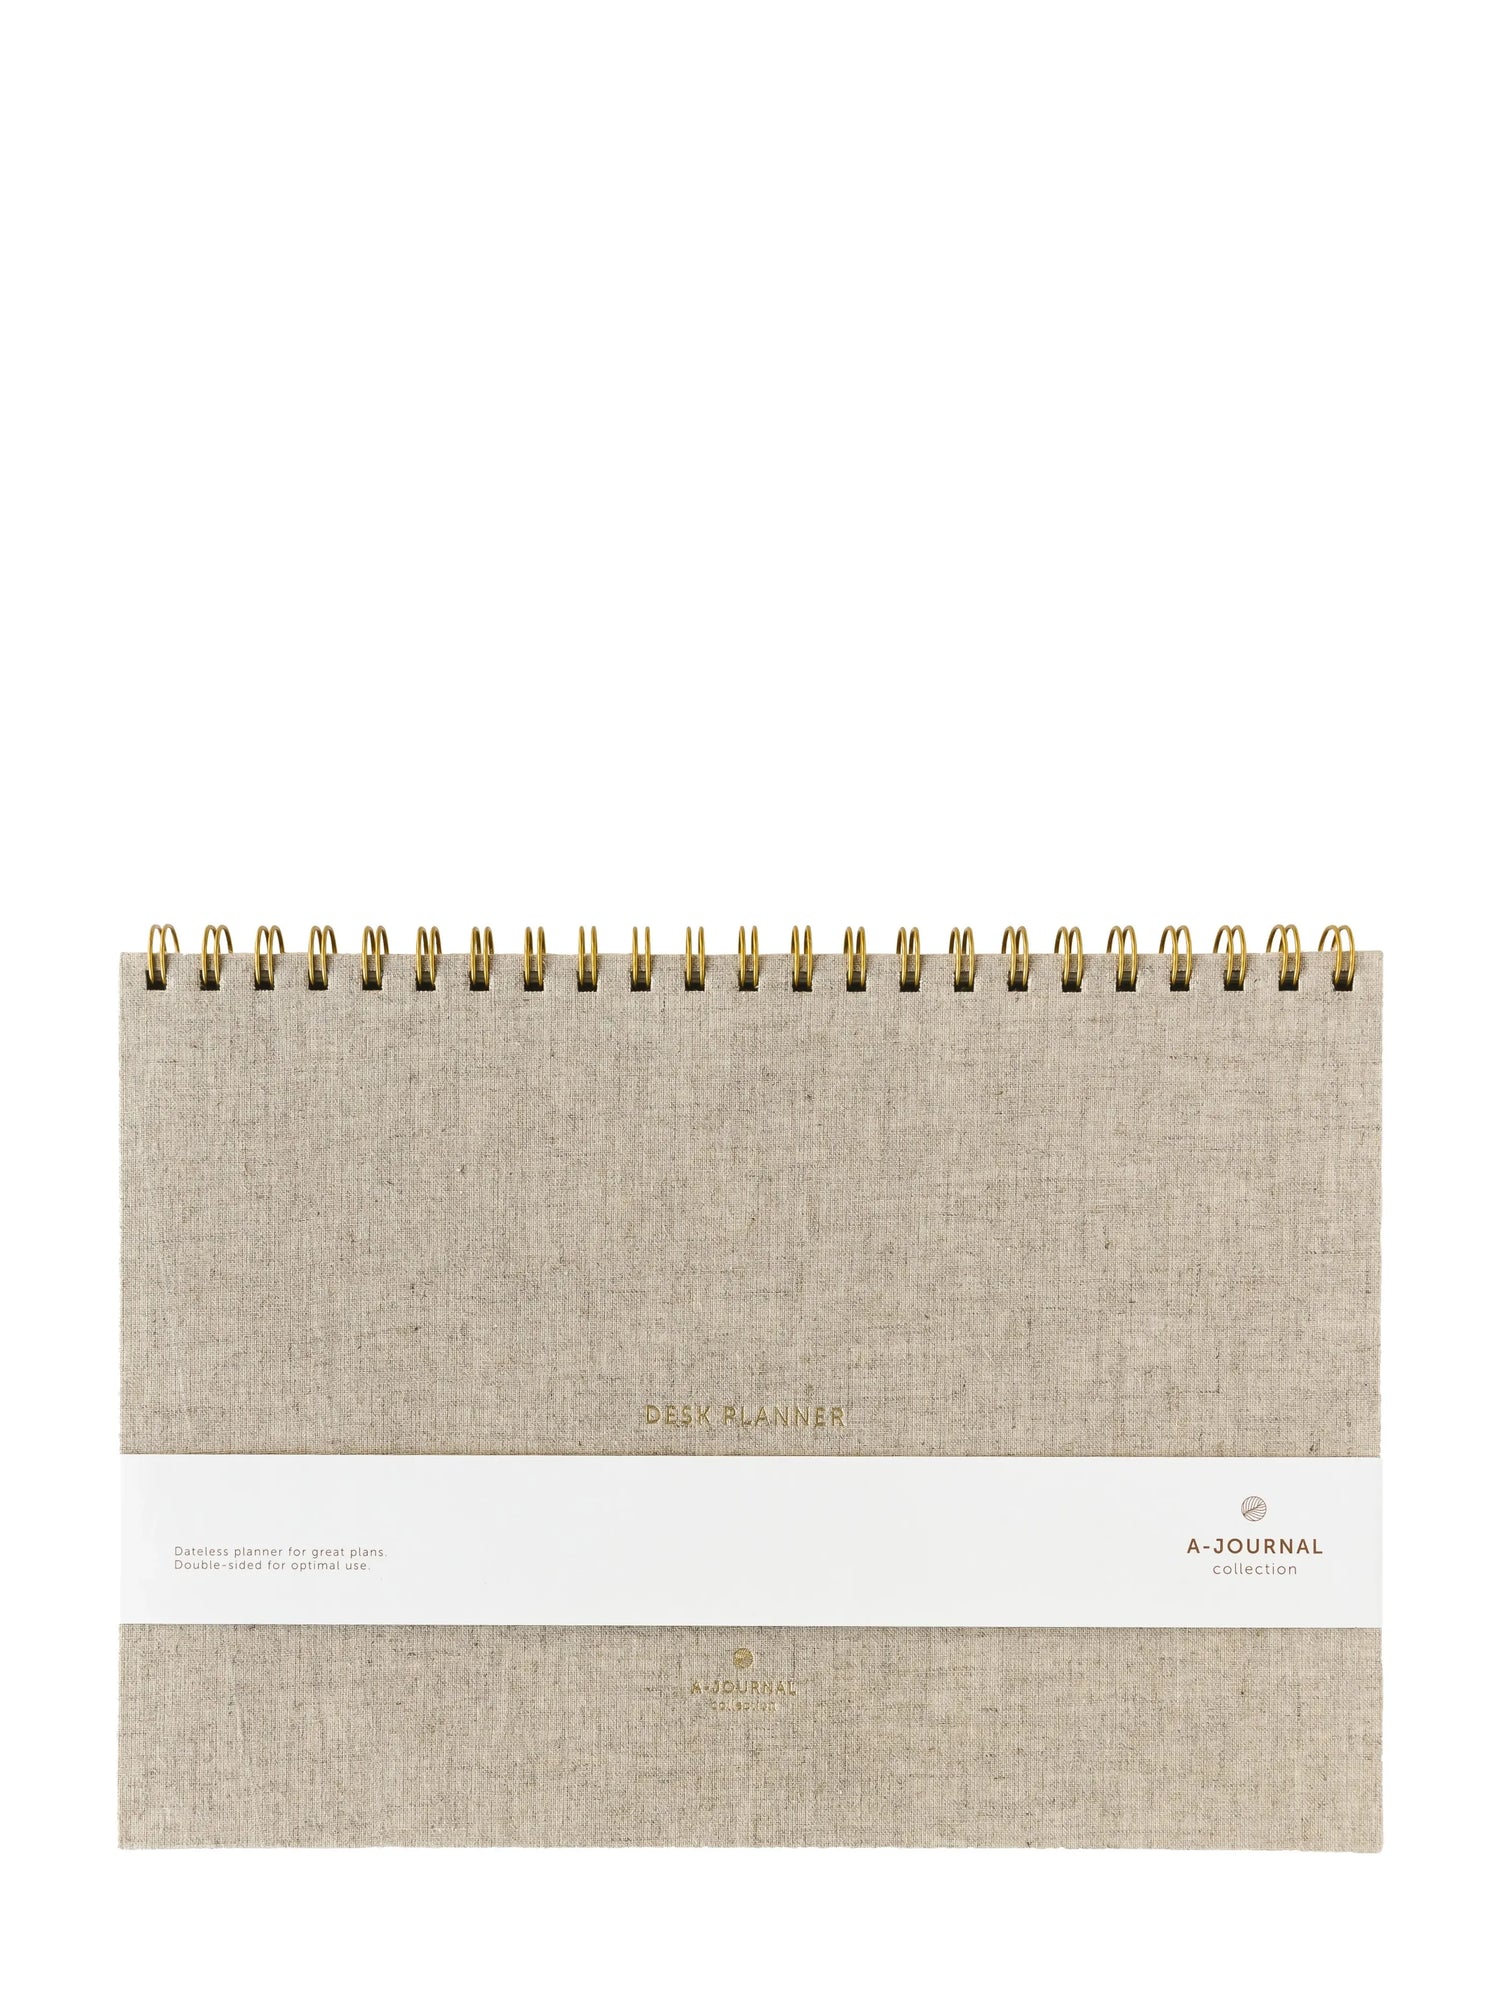 A-Journal Deskplanner, Linen